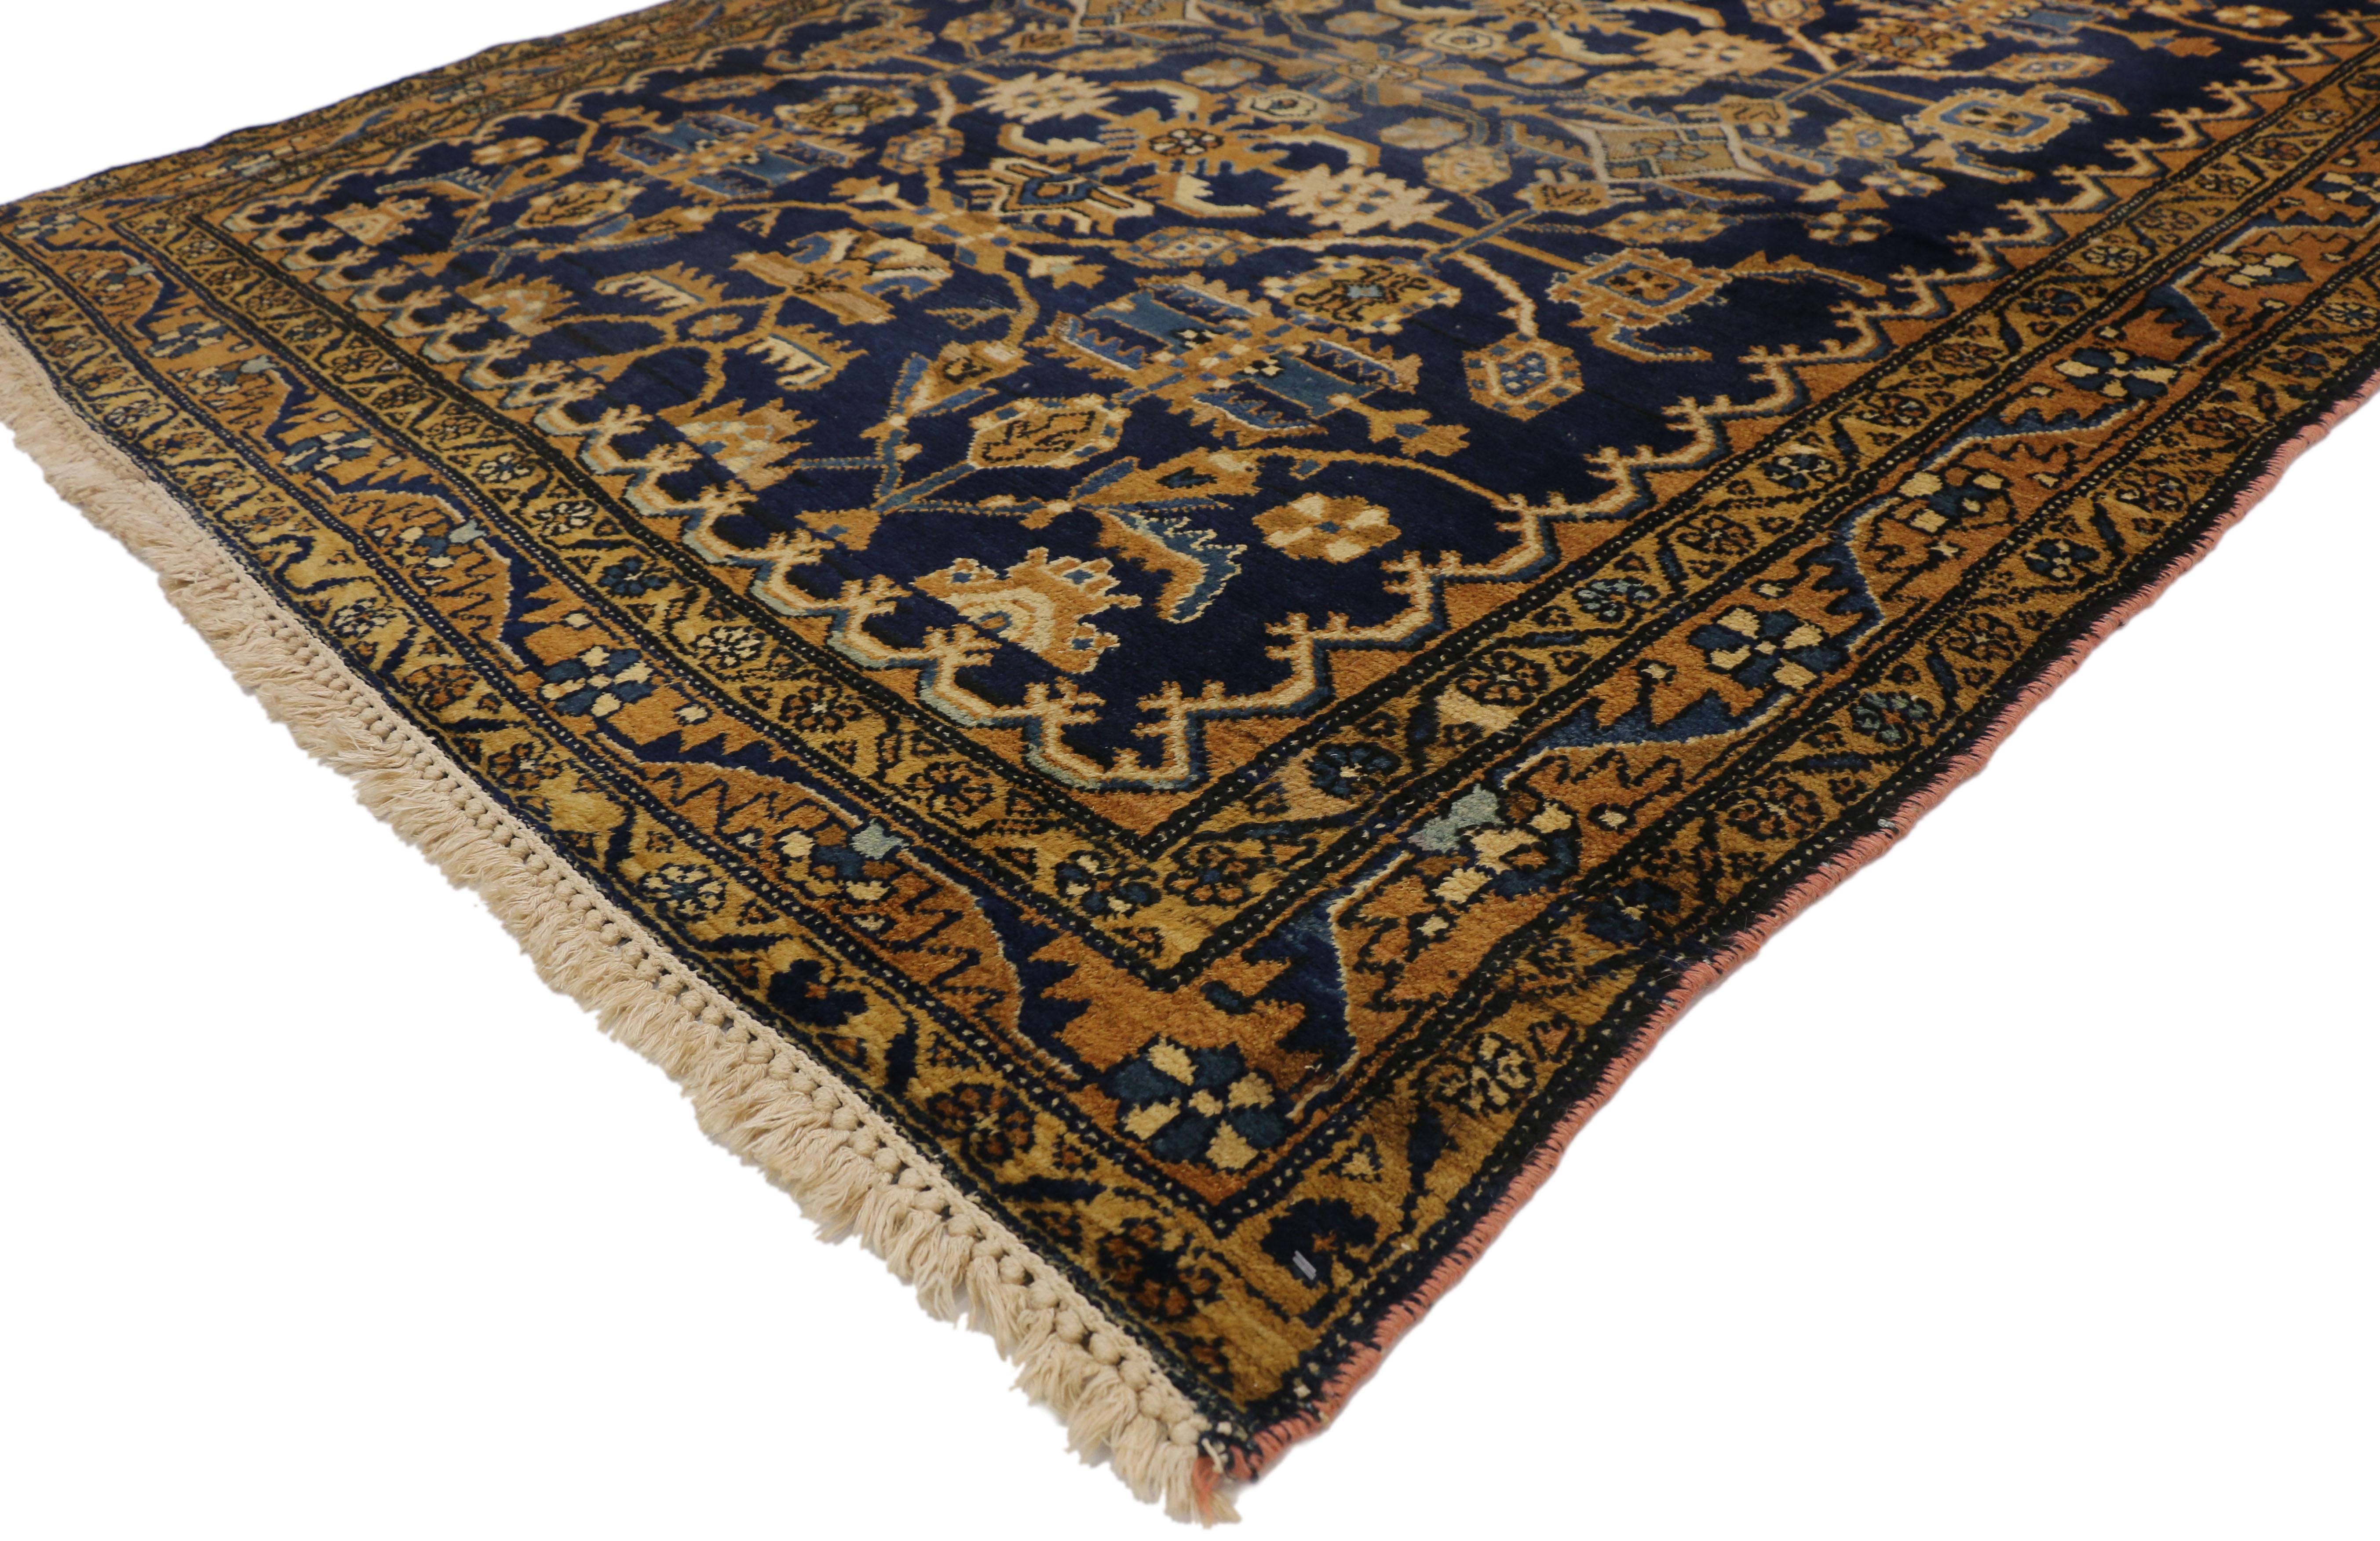 75775, alter persischer Hamadan-Teppich im Hollywood-Regency-Stil. Dieser handgeknüpfte alte persische Hamadan-Teppich aus Wolle zeigt ein botanisches Allover-Muster im Hollywood-Regency-Stil. Stängel und Ranken aus Messing und Kamel wachsen zu